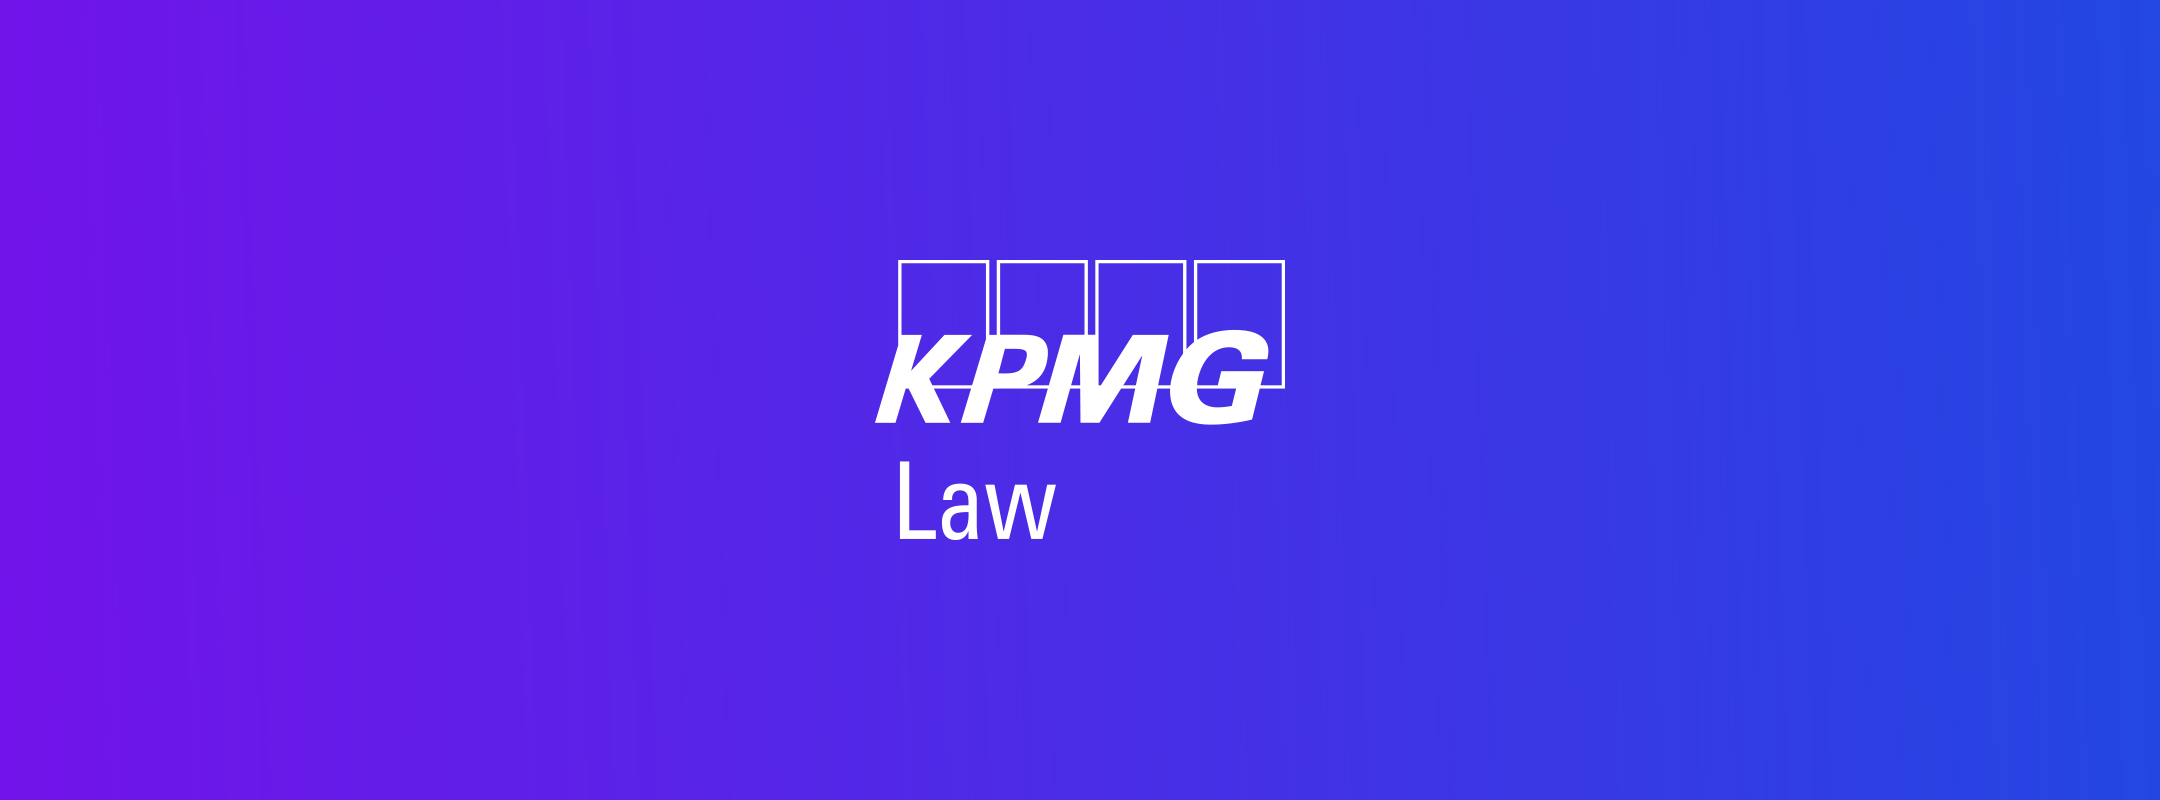 KPMG Law